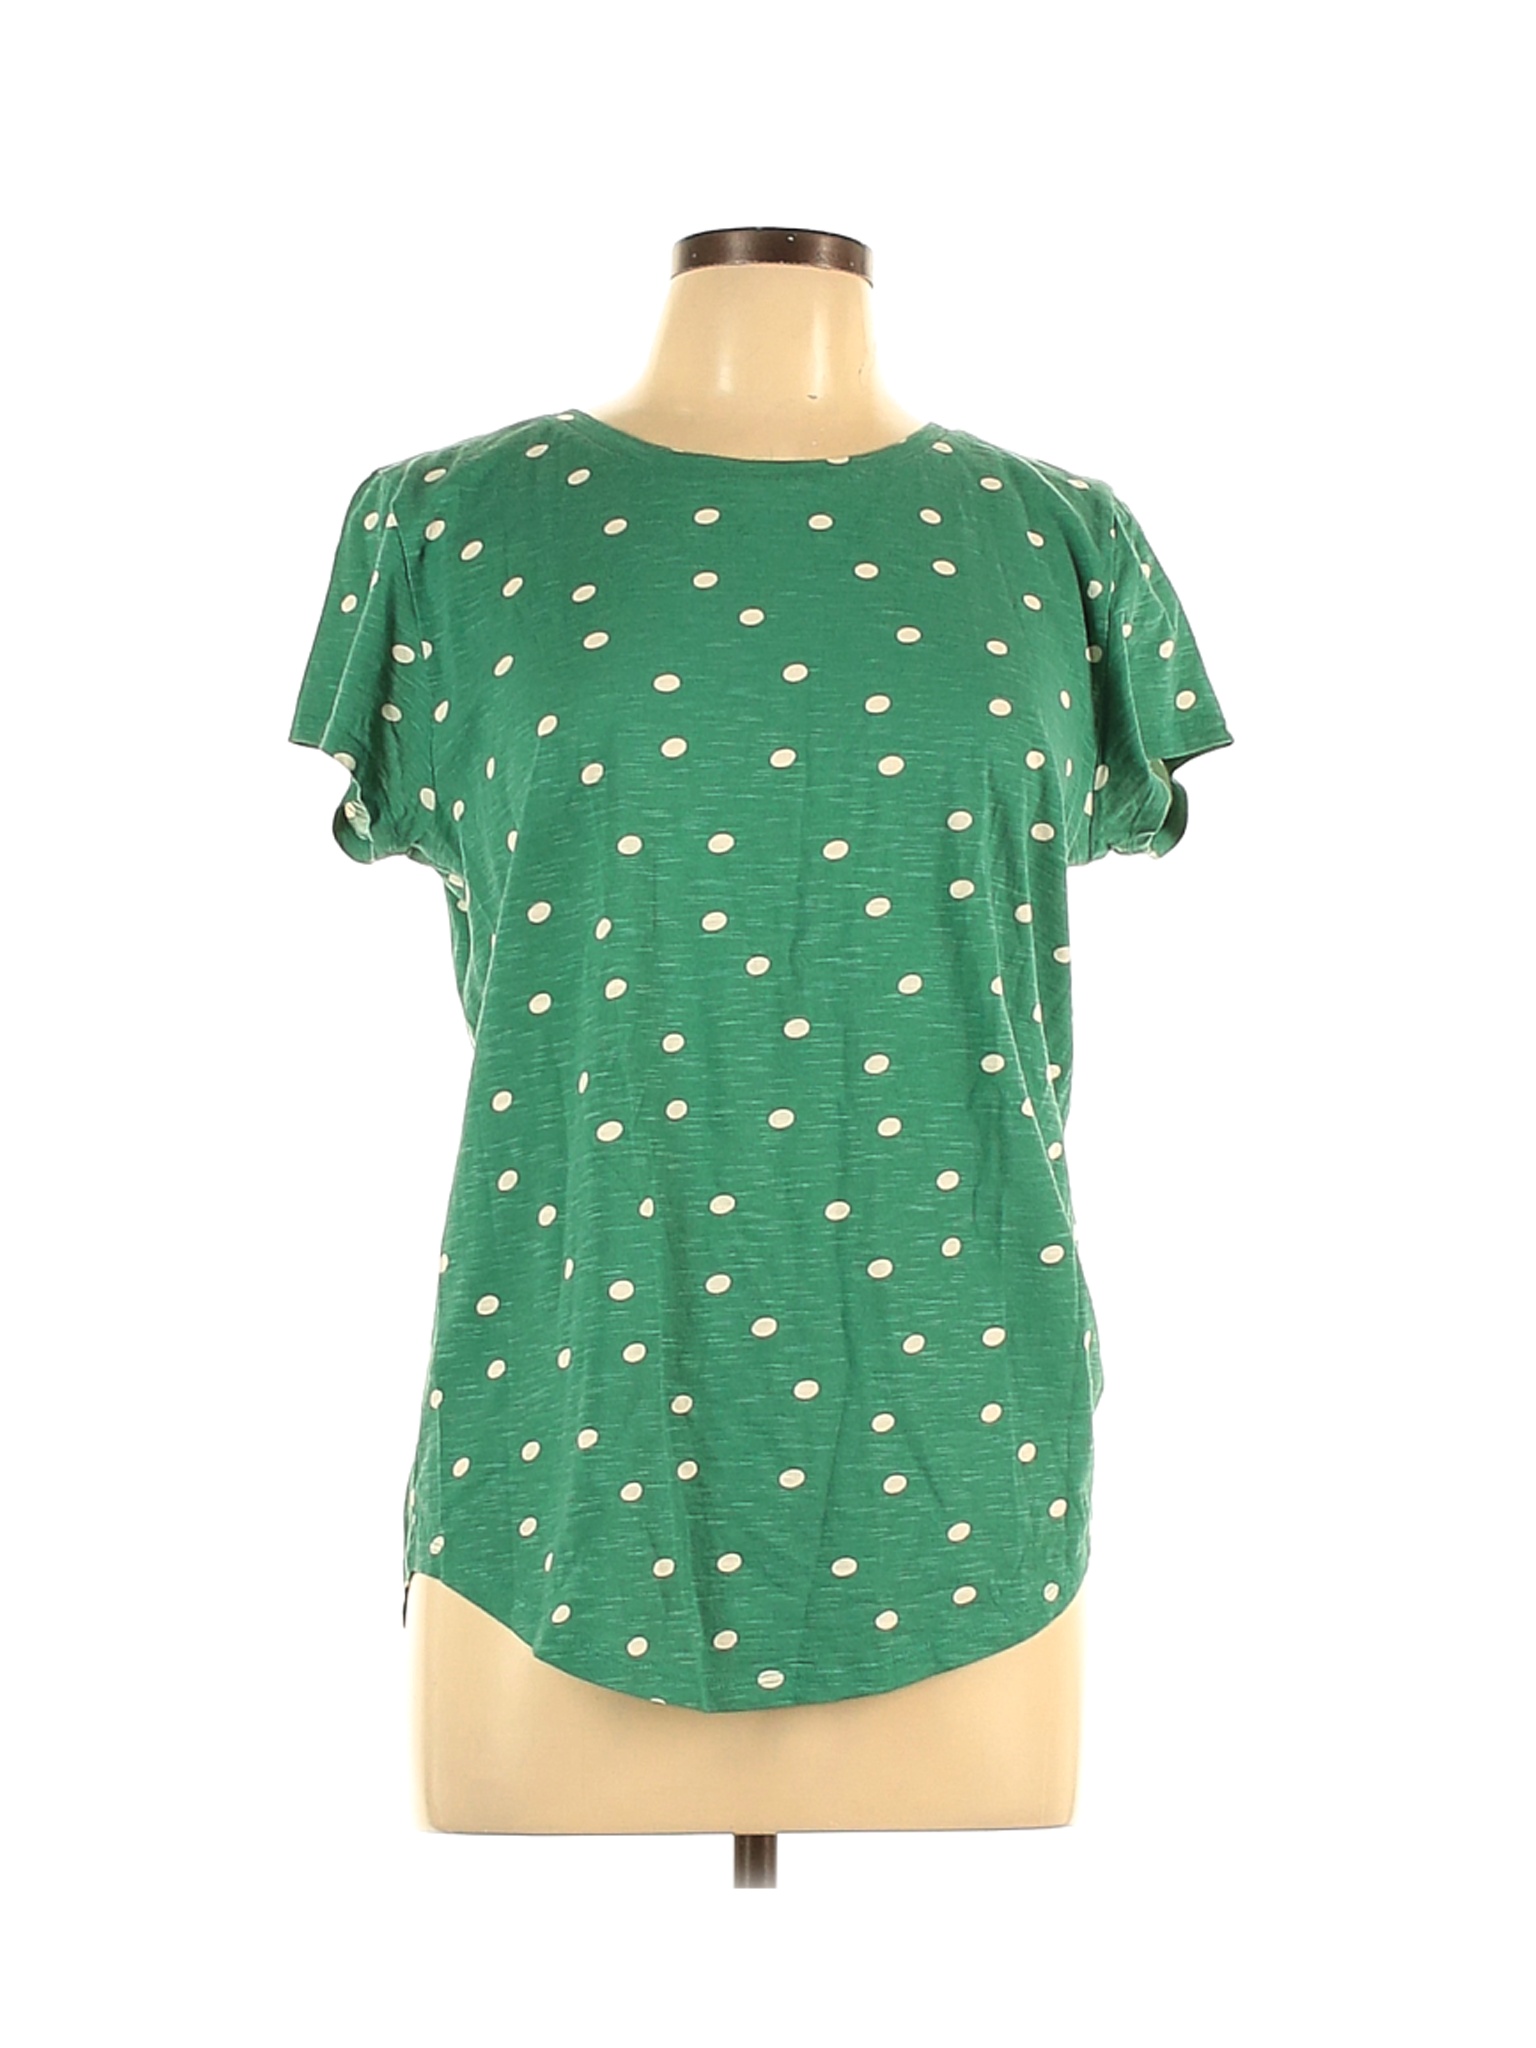 Ann Taylor LOFT Women Green Short Sleeve T-Shirt L | eBay